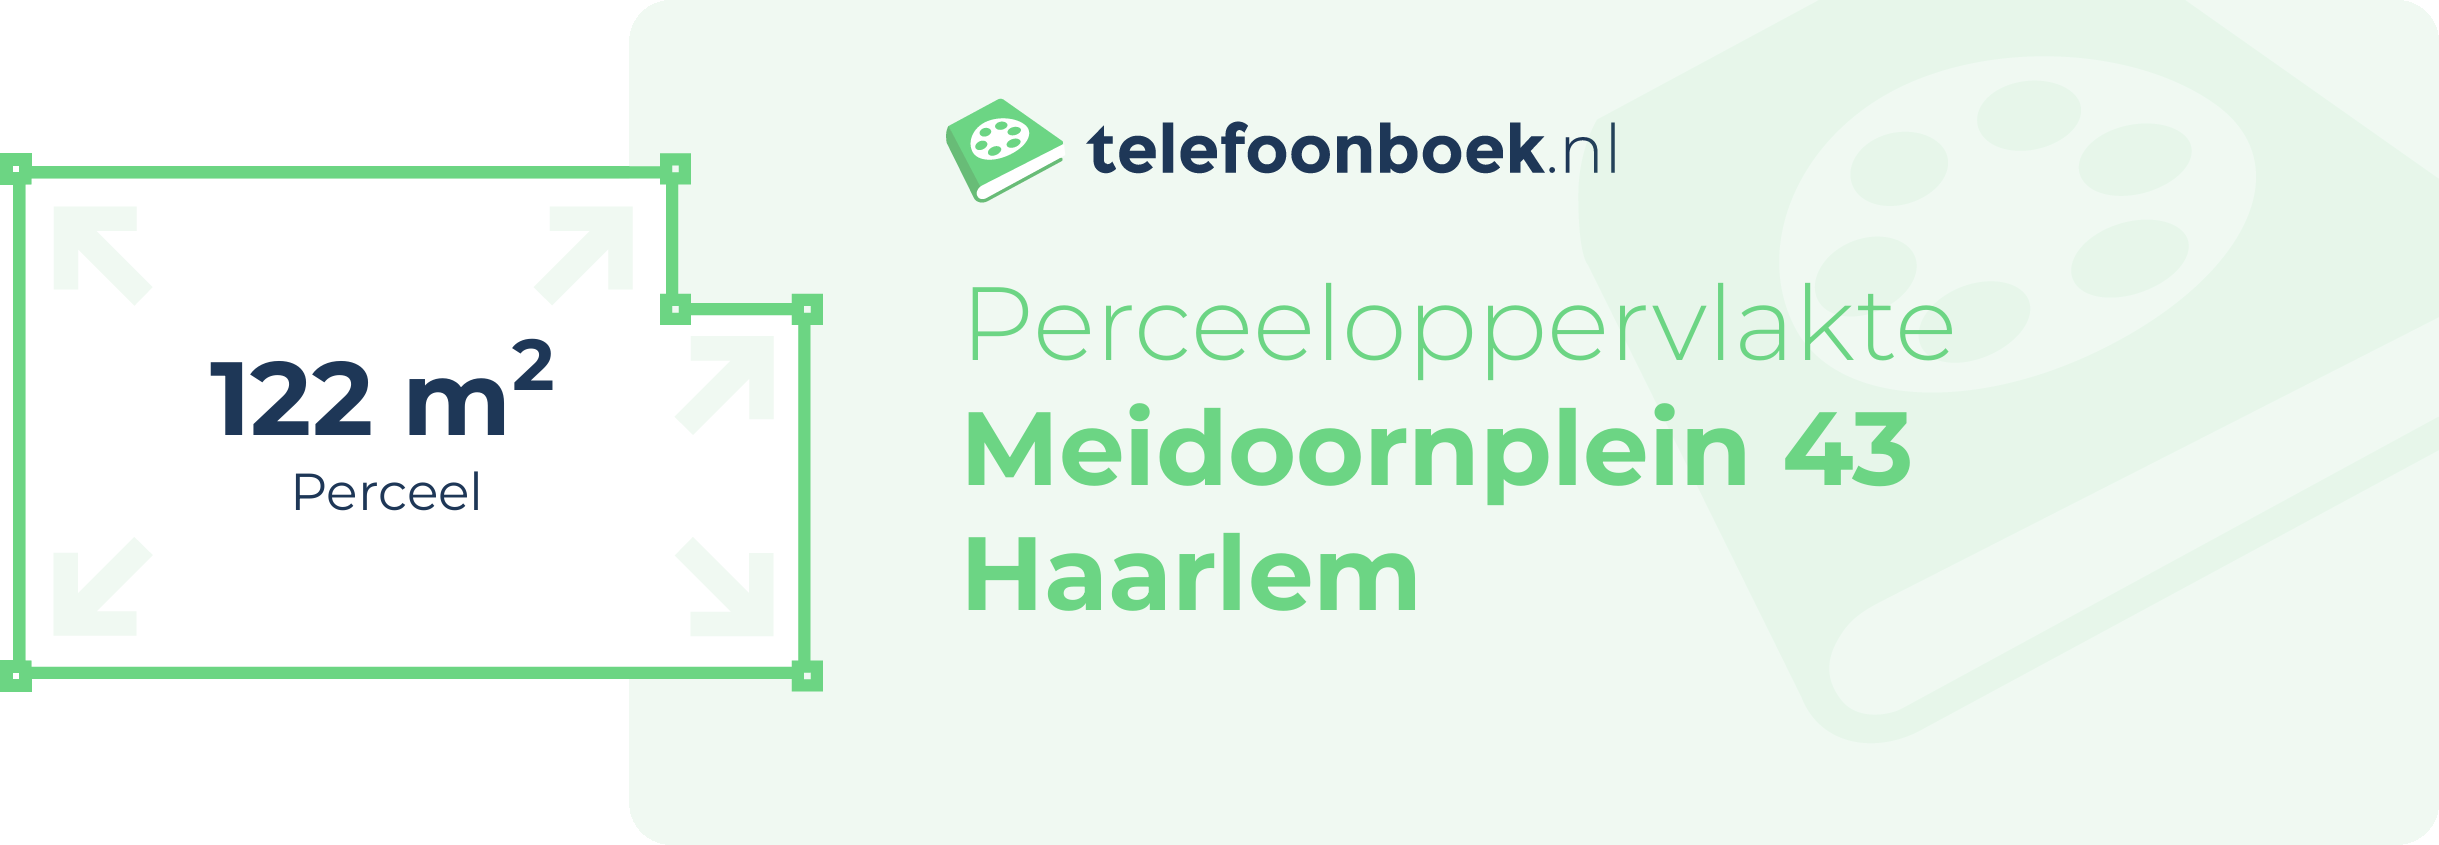 Perceeloppervlakte Meidoornplein 43 Haarlem